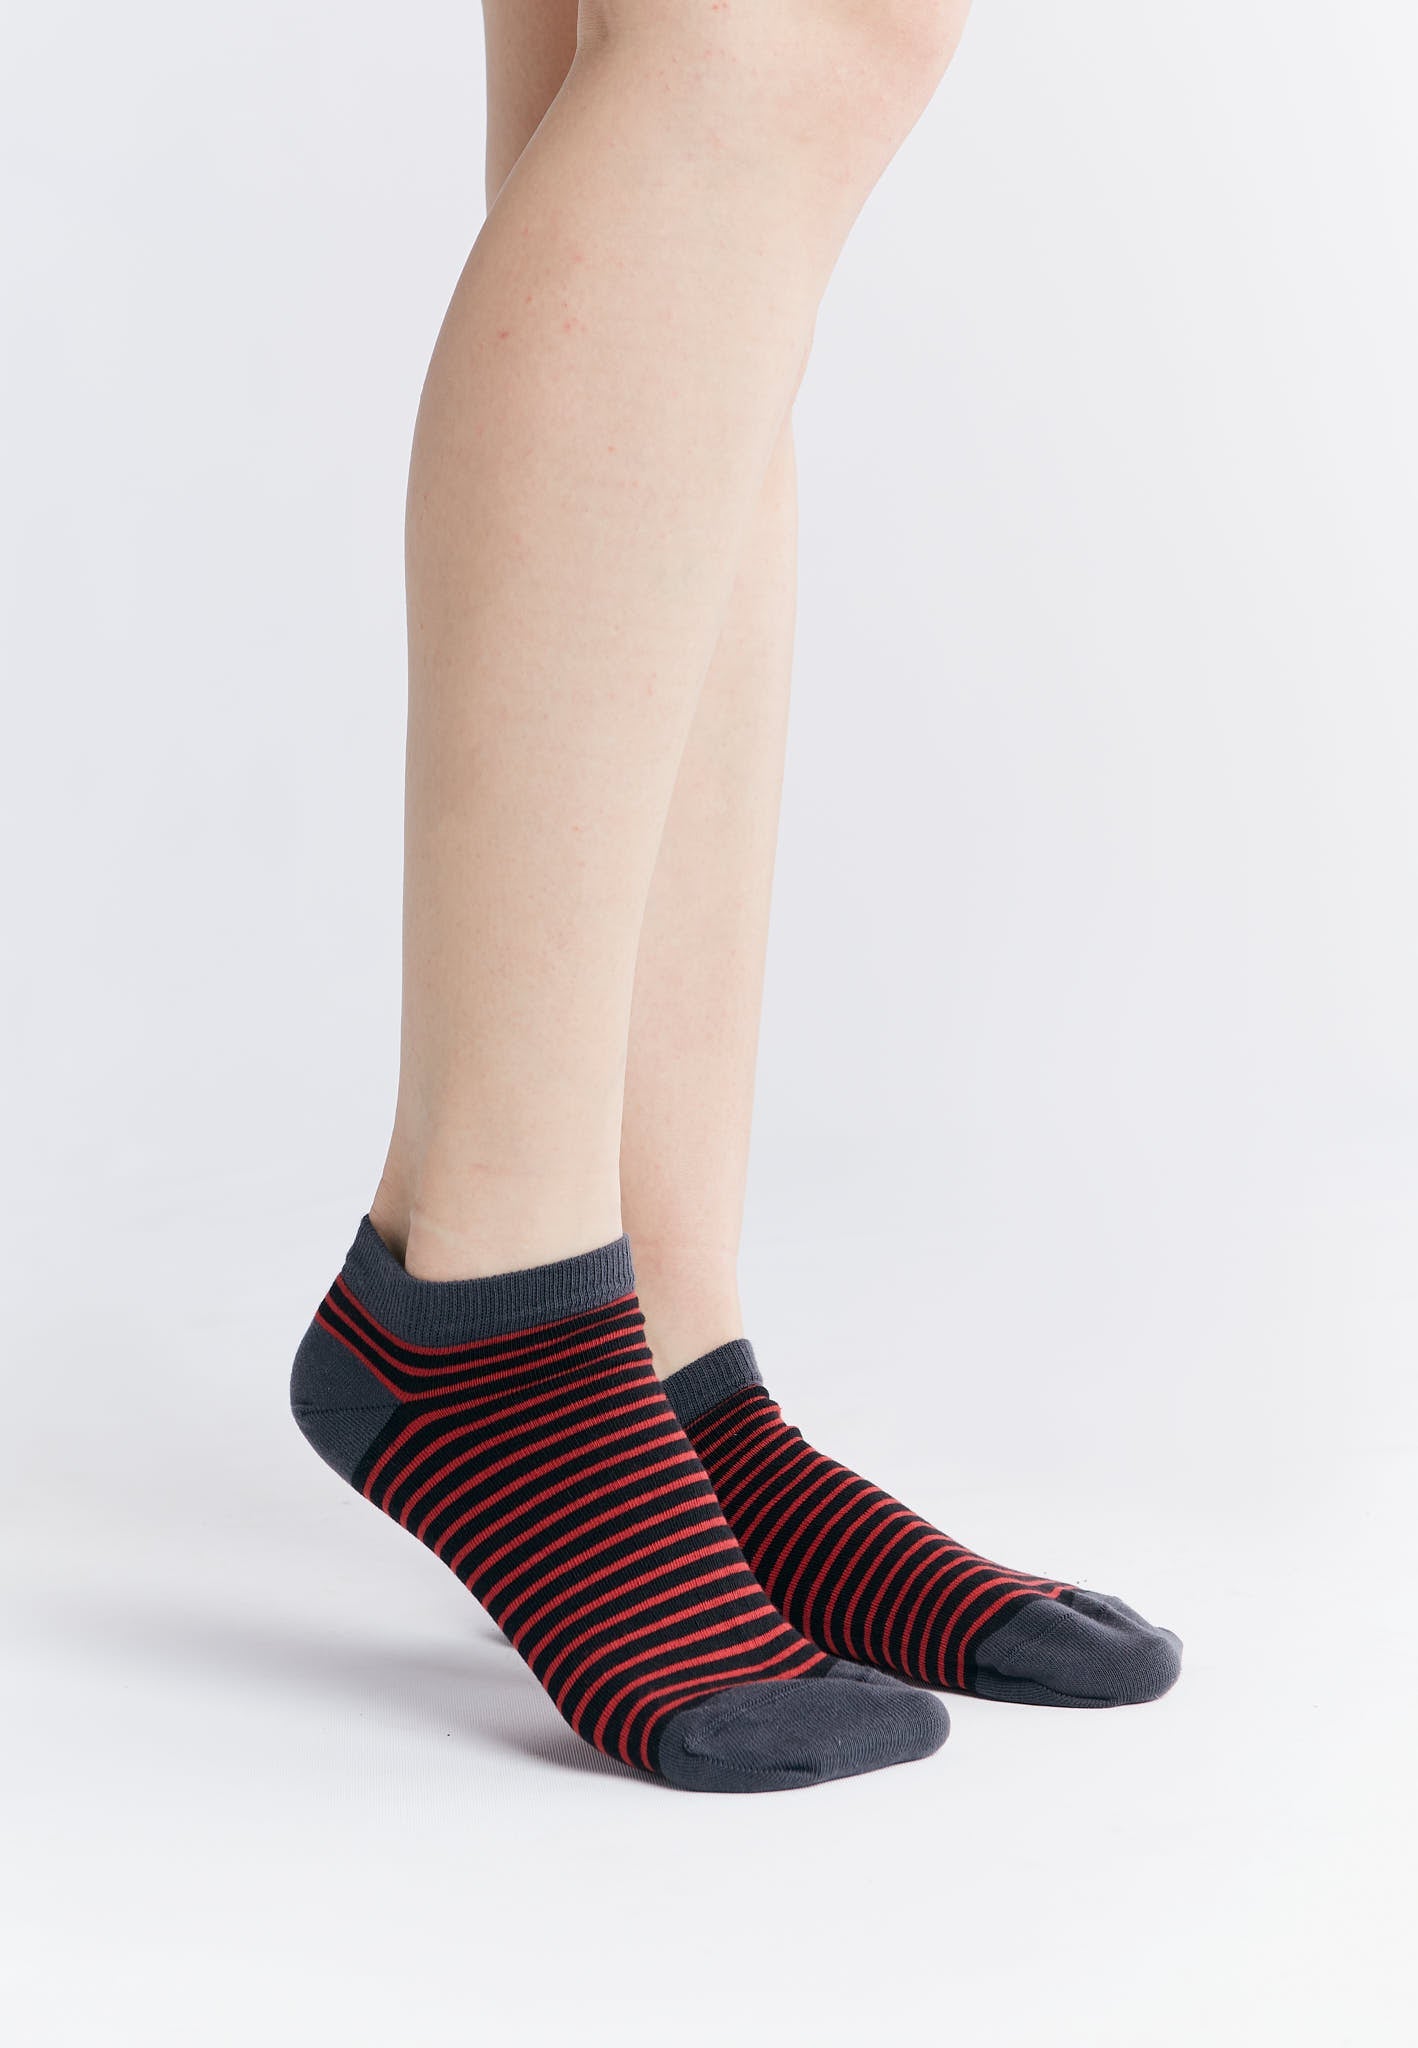 9322 | Unisex Socks - Cherry Red/Black Striped (6 Pack)